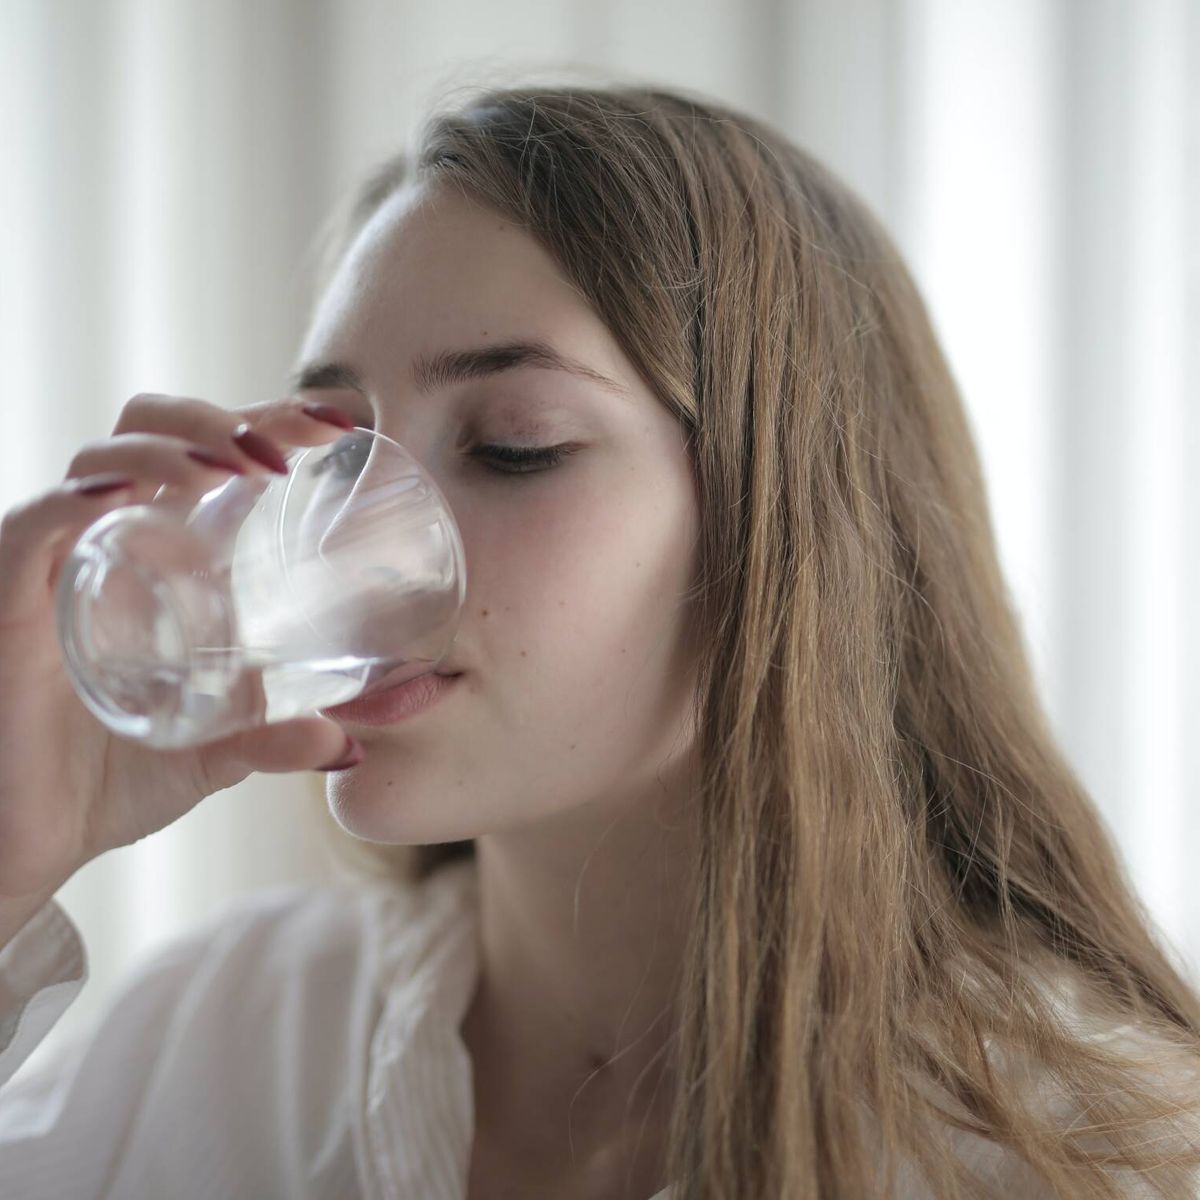 preposición Altoparlante País Tomar 8 vasos de agua al día es demasiado para la mayoría